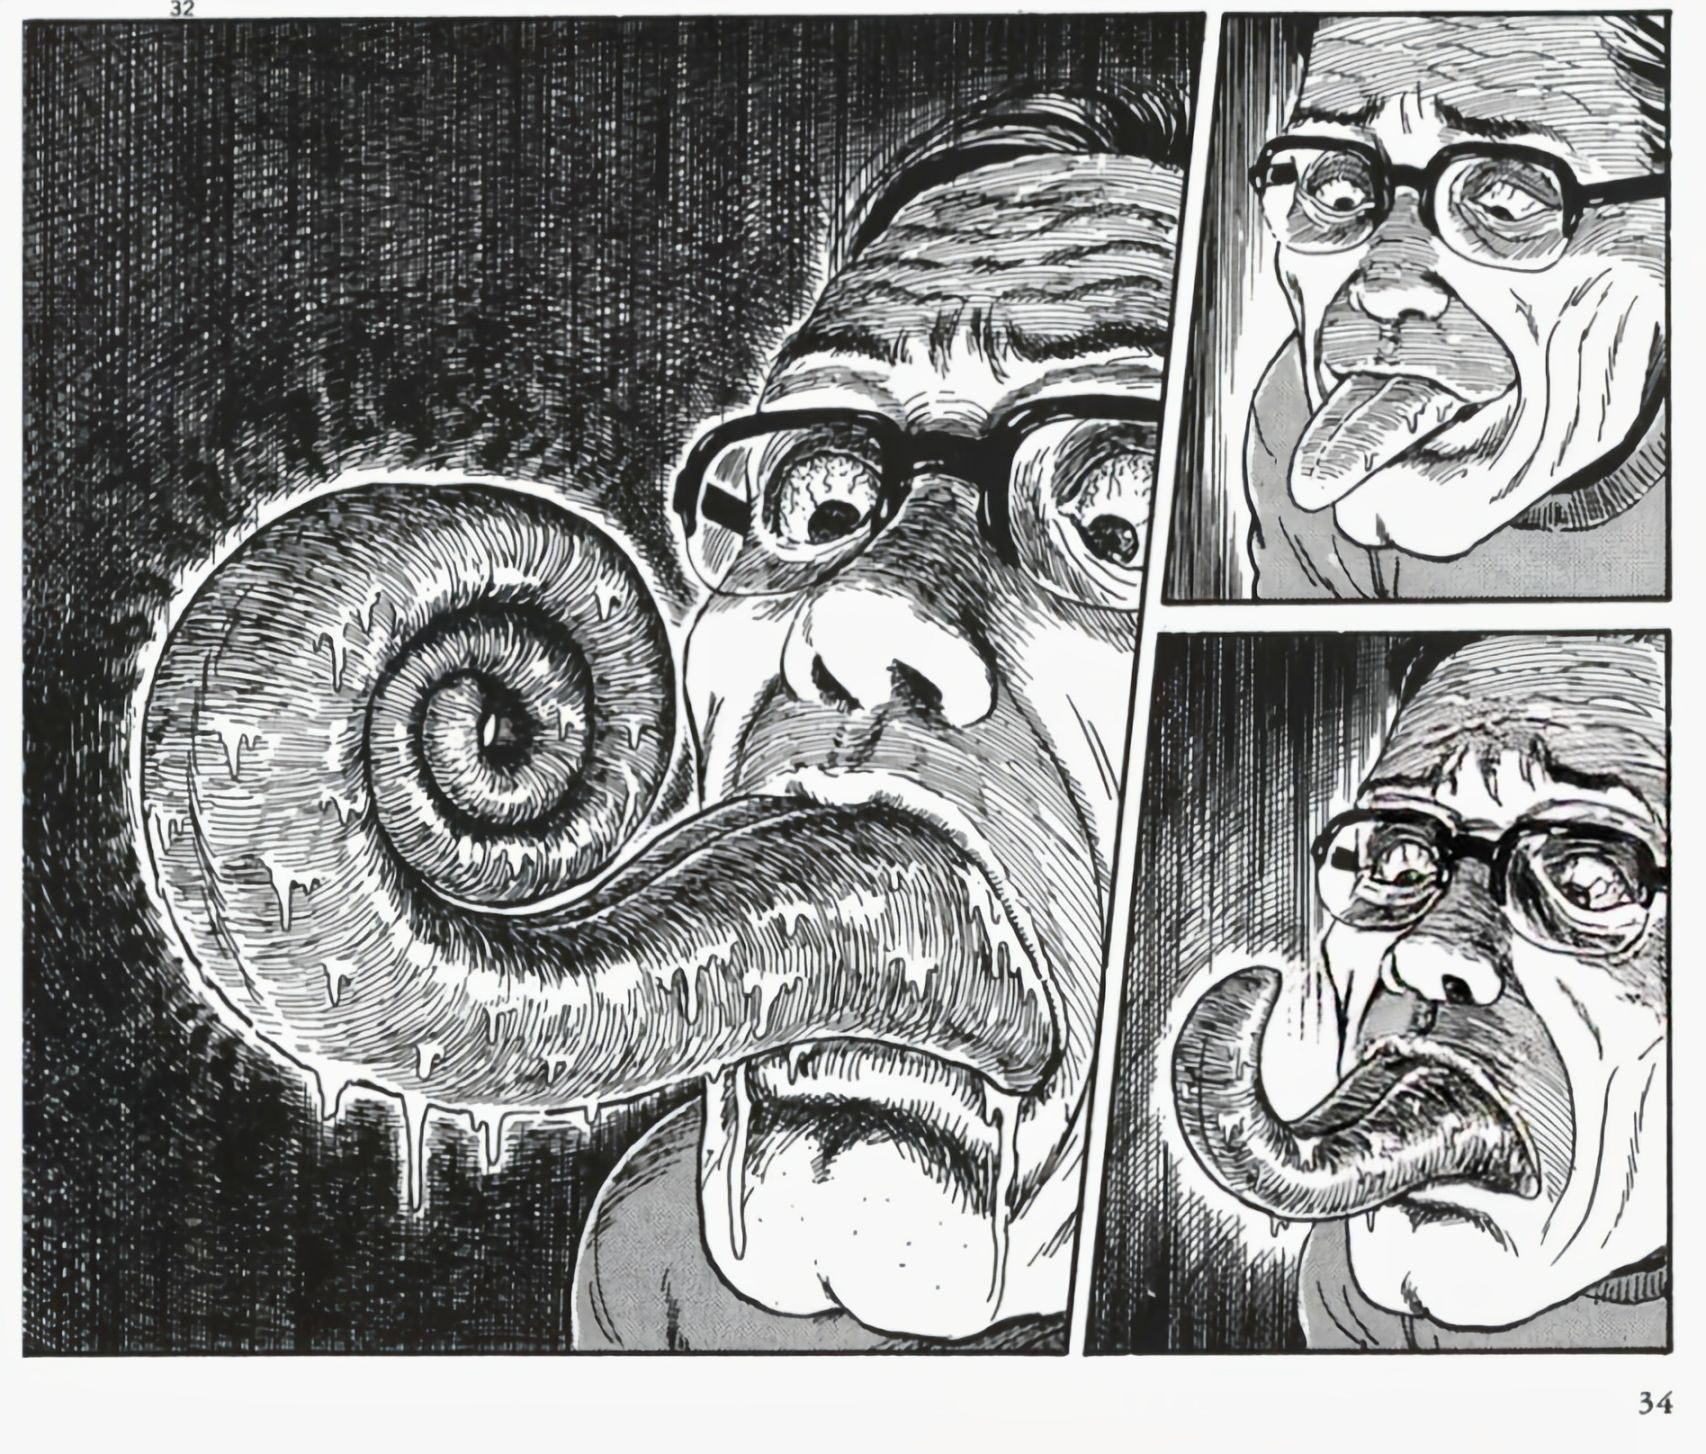 【影视动漫】伊藤润二的顶级恐怖漫画《漩涡》-第12张